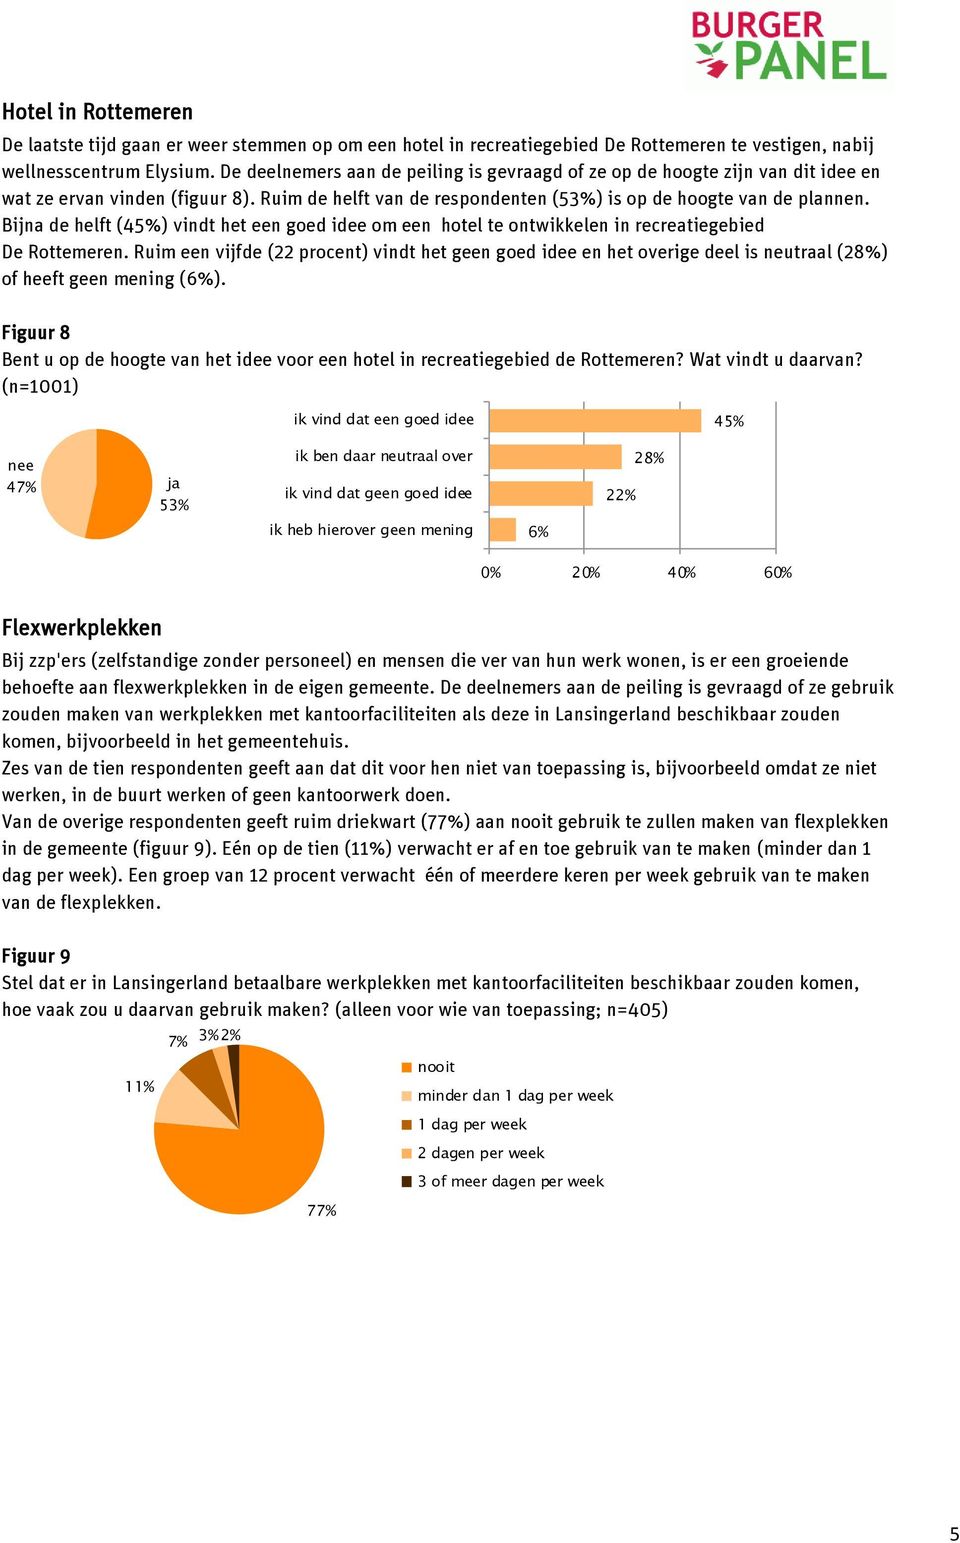 Bijna de helft (45%) vindt het een goed idee om een hotel te ontwikkelen in recreatiegebied De Rottemeren.